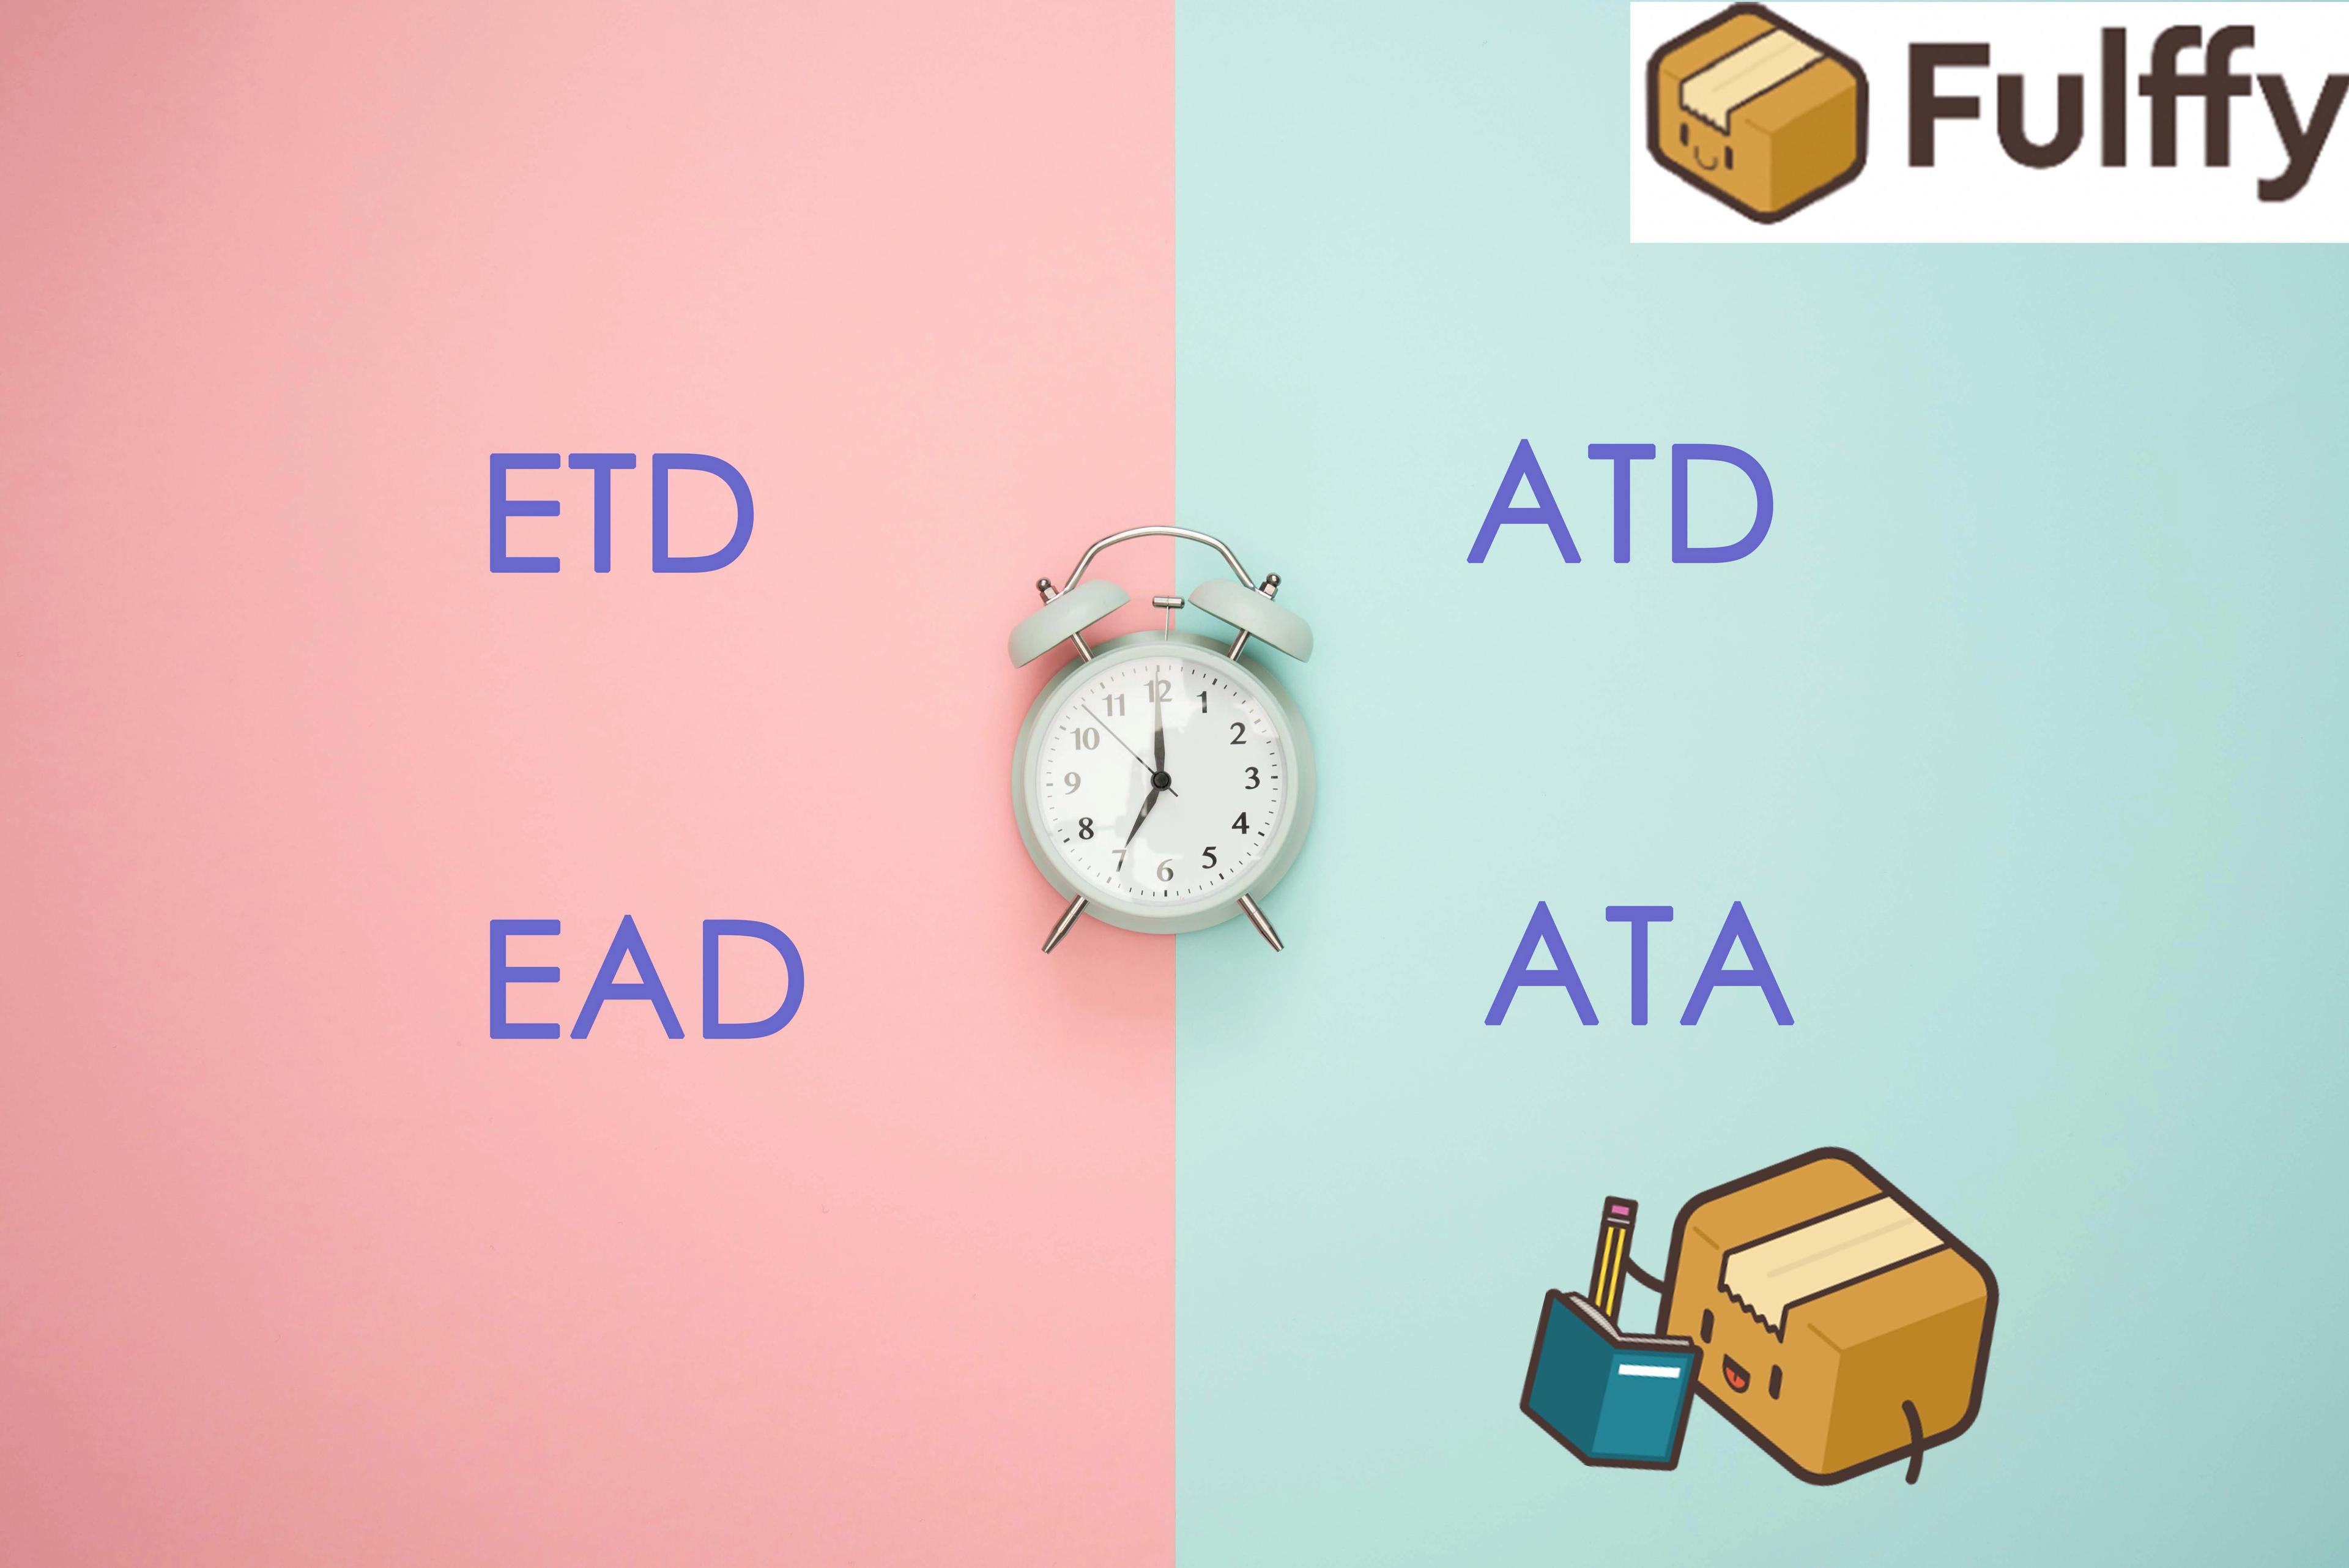 【國際寄件術語】ETA/ETD/ATA/ATD是什麼